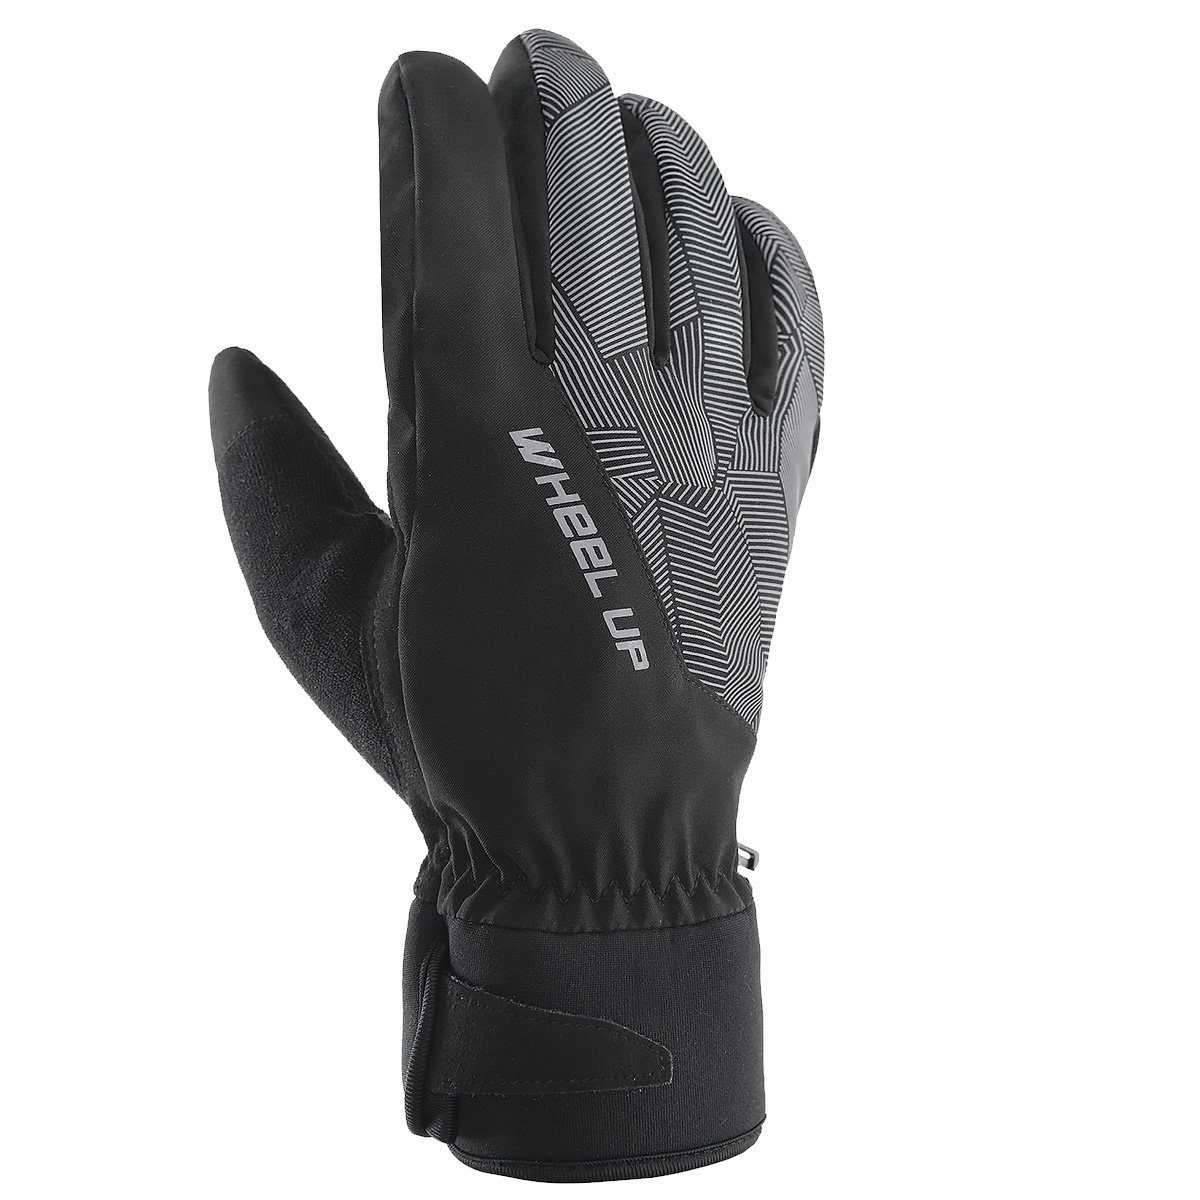 Fahrrad-Handschuhe Skihandschuhe mit Funktion winddicht Winterhandschuhe MidGard Touchscreen